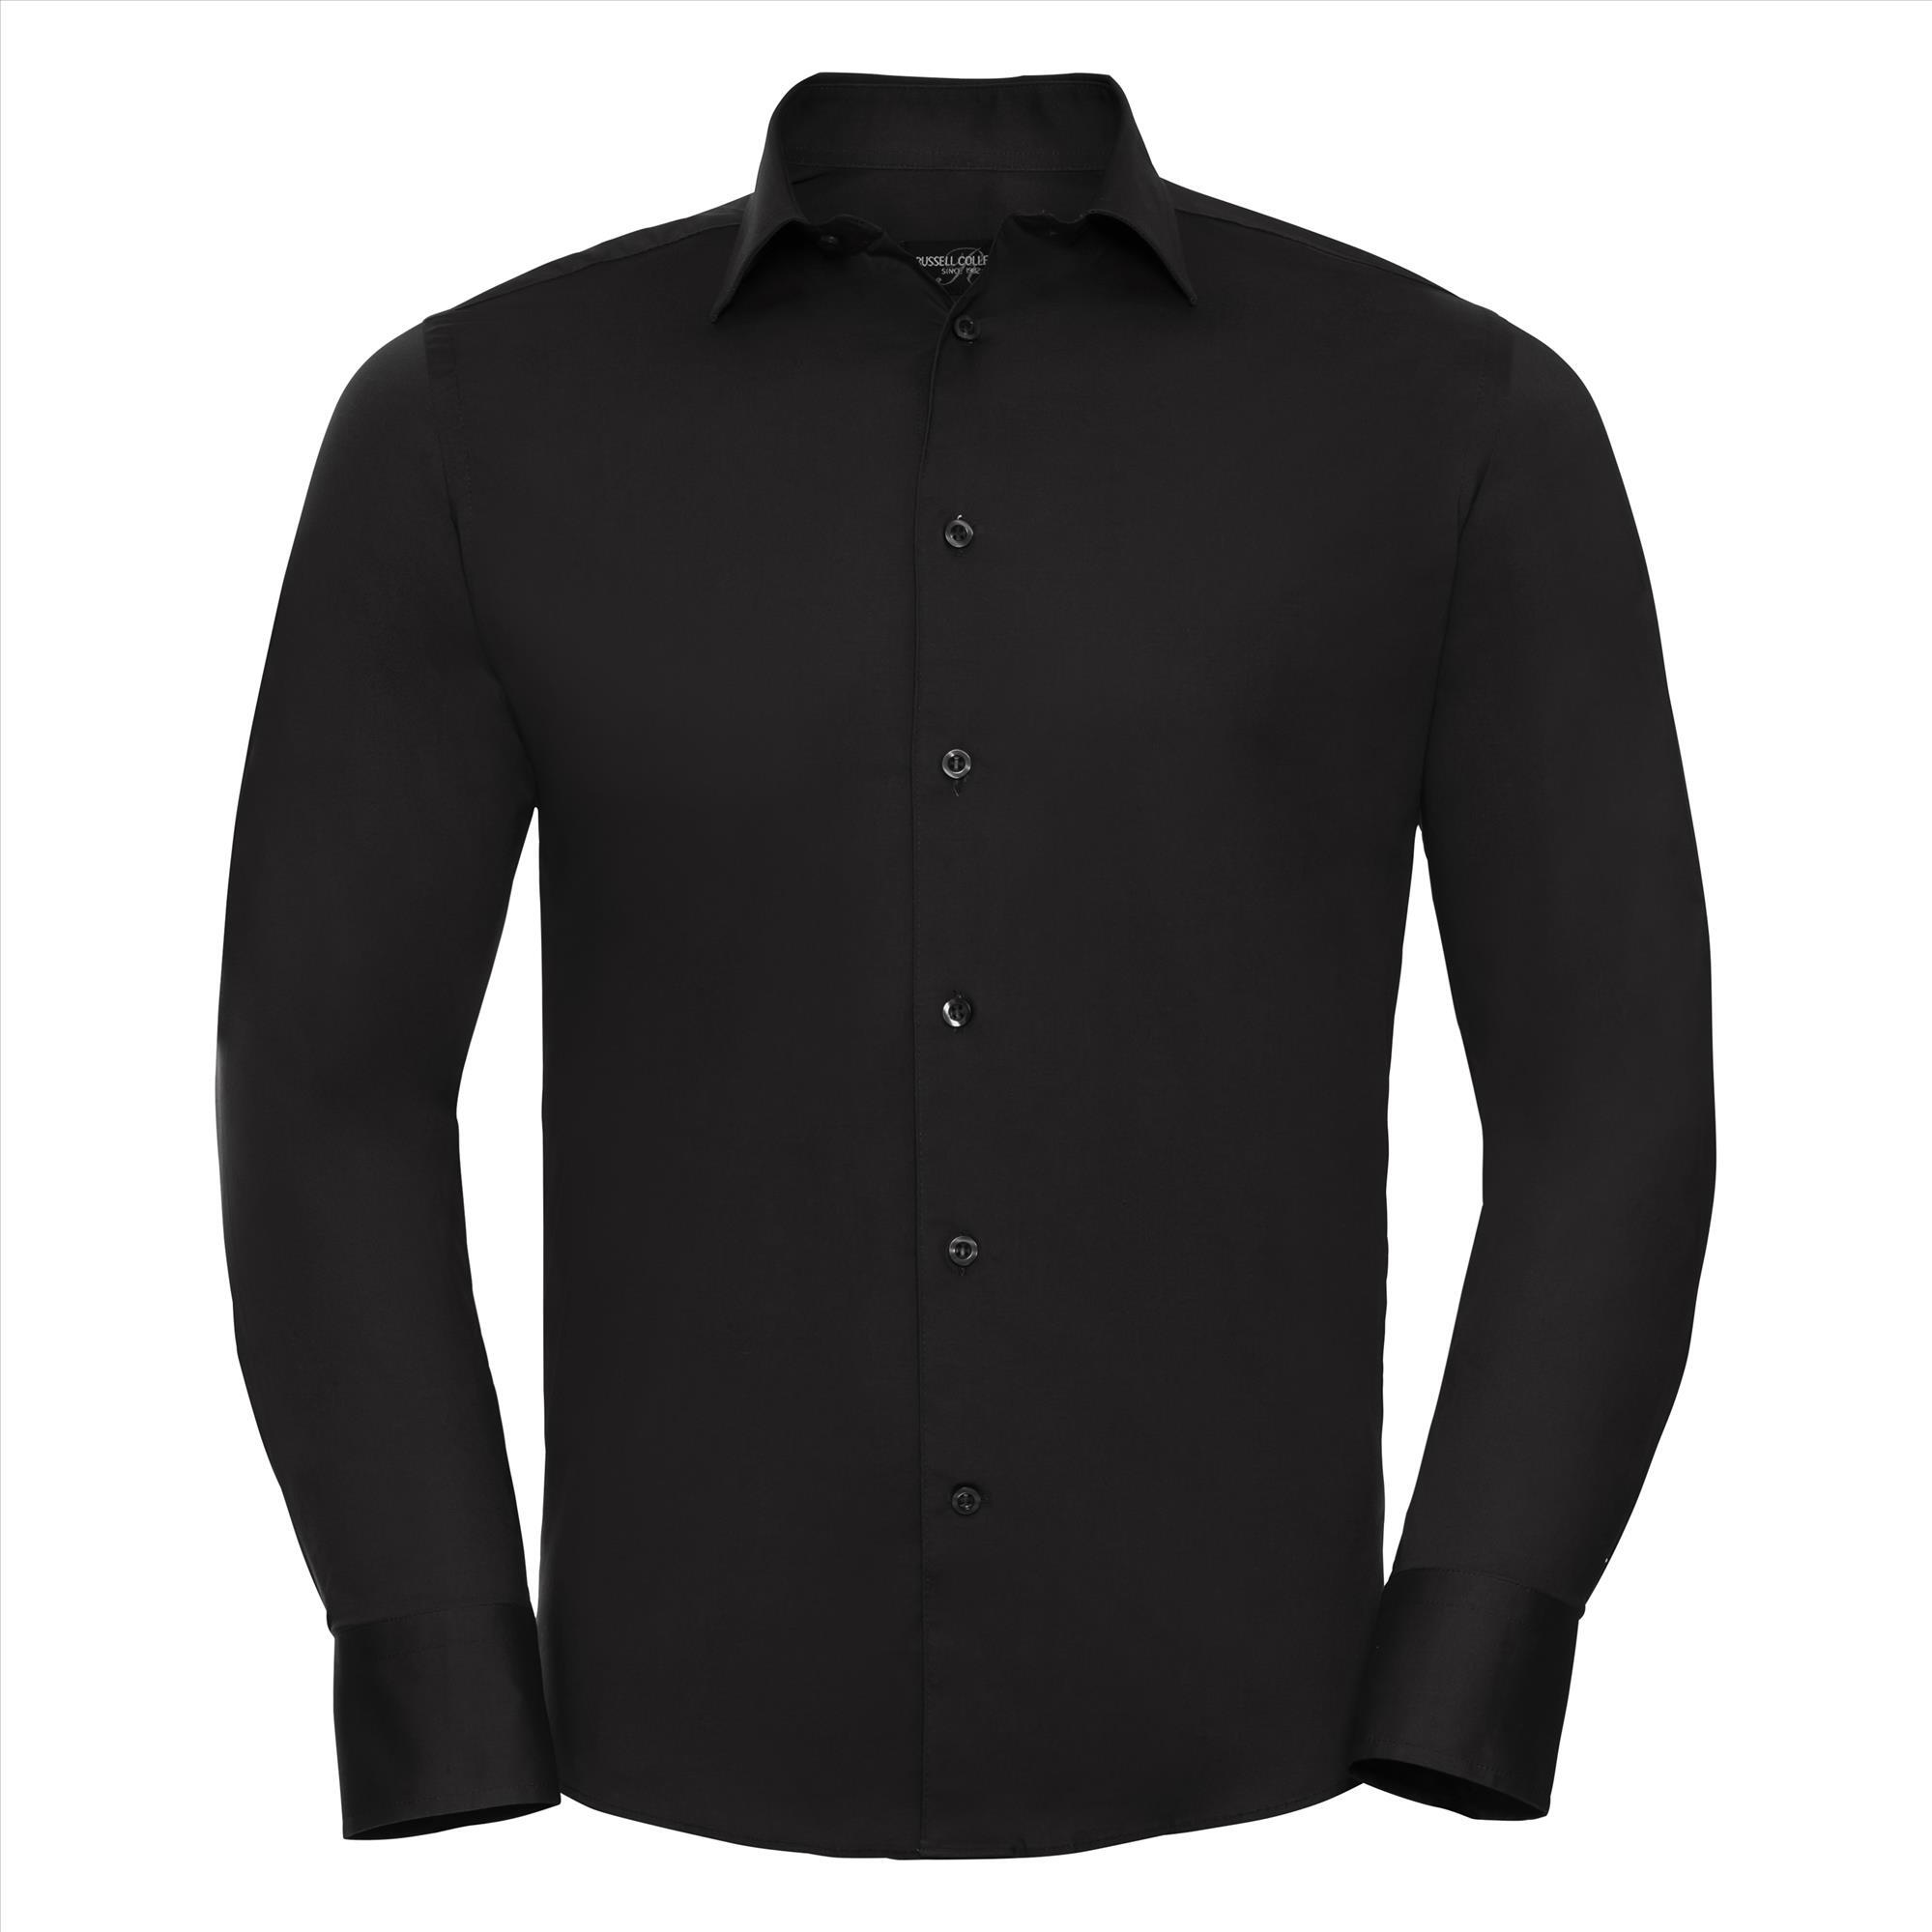 Getailleerd heren overhemd zwart te bedrukken met bedrijfslogo